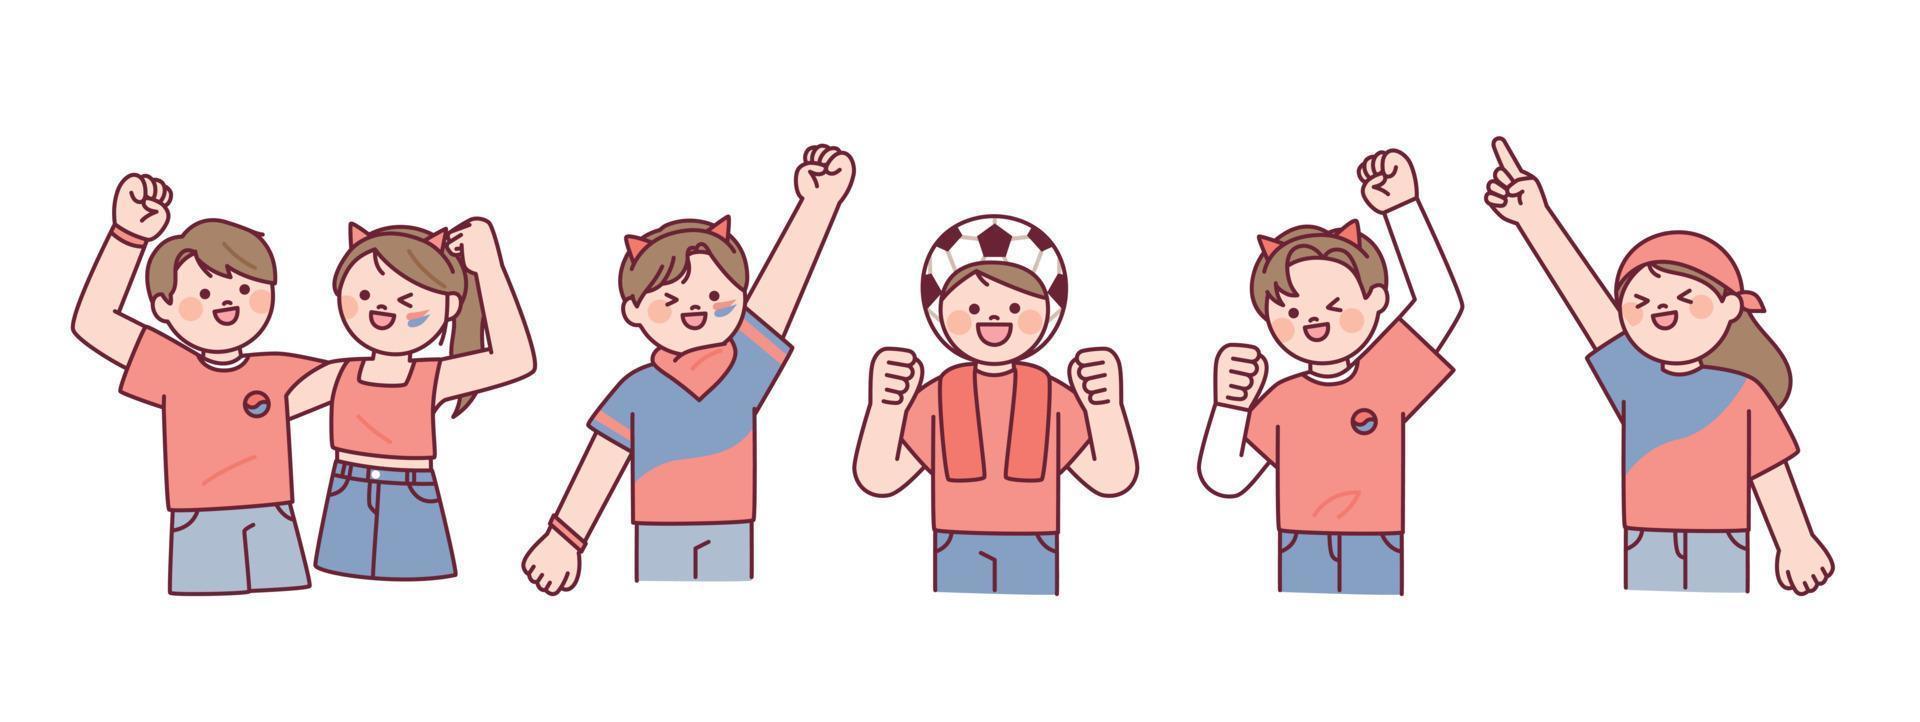 équipe de football coréenne acclamant les diables rouges. les gens en t-shirts rouges applaudissent avec leurs mains levées. vecteur